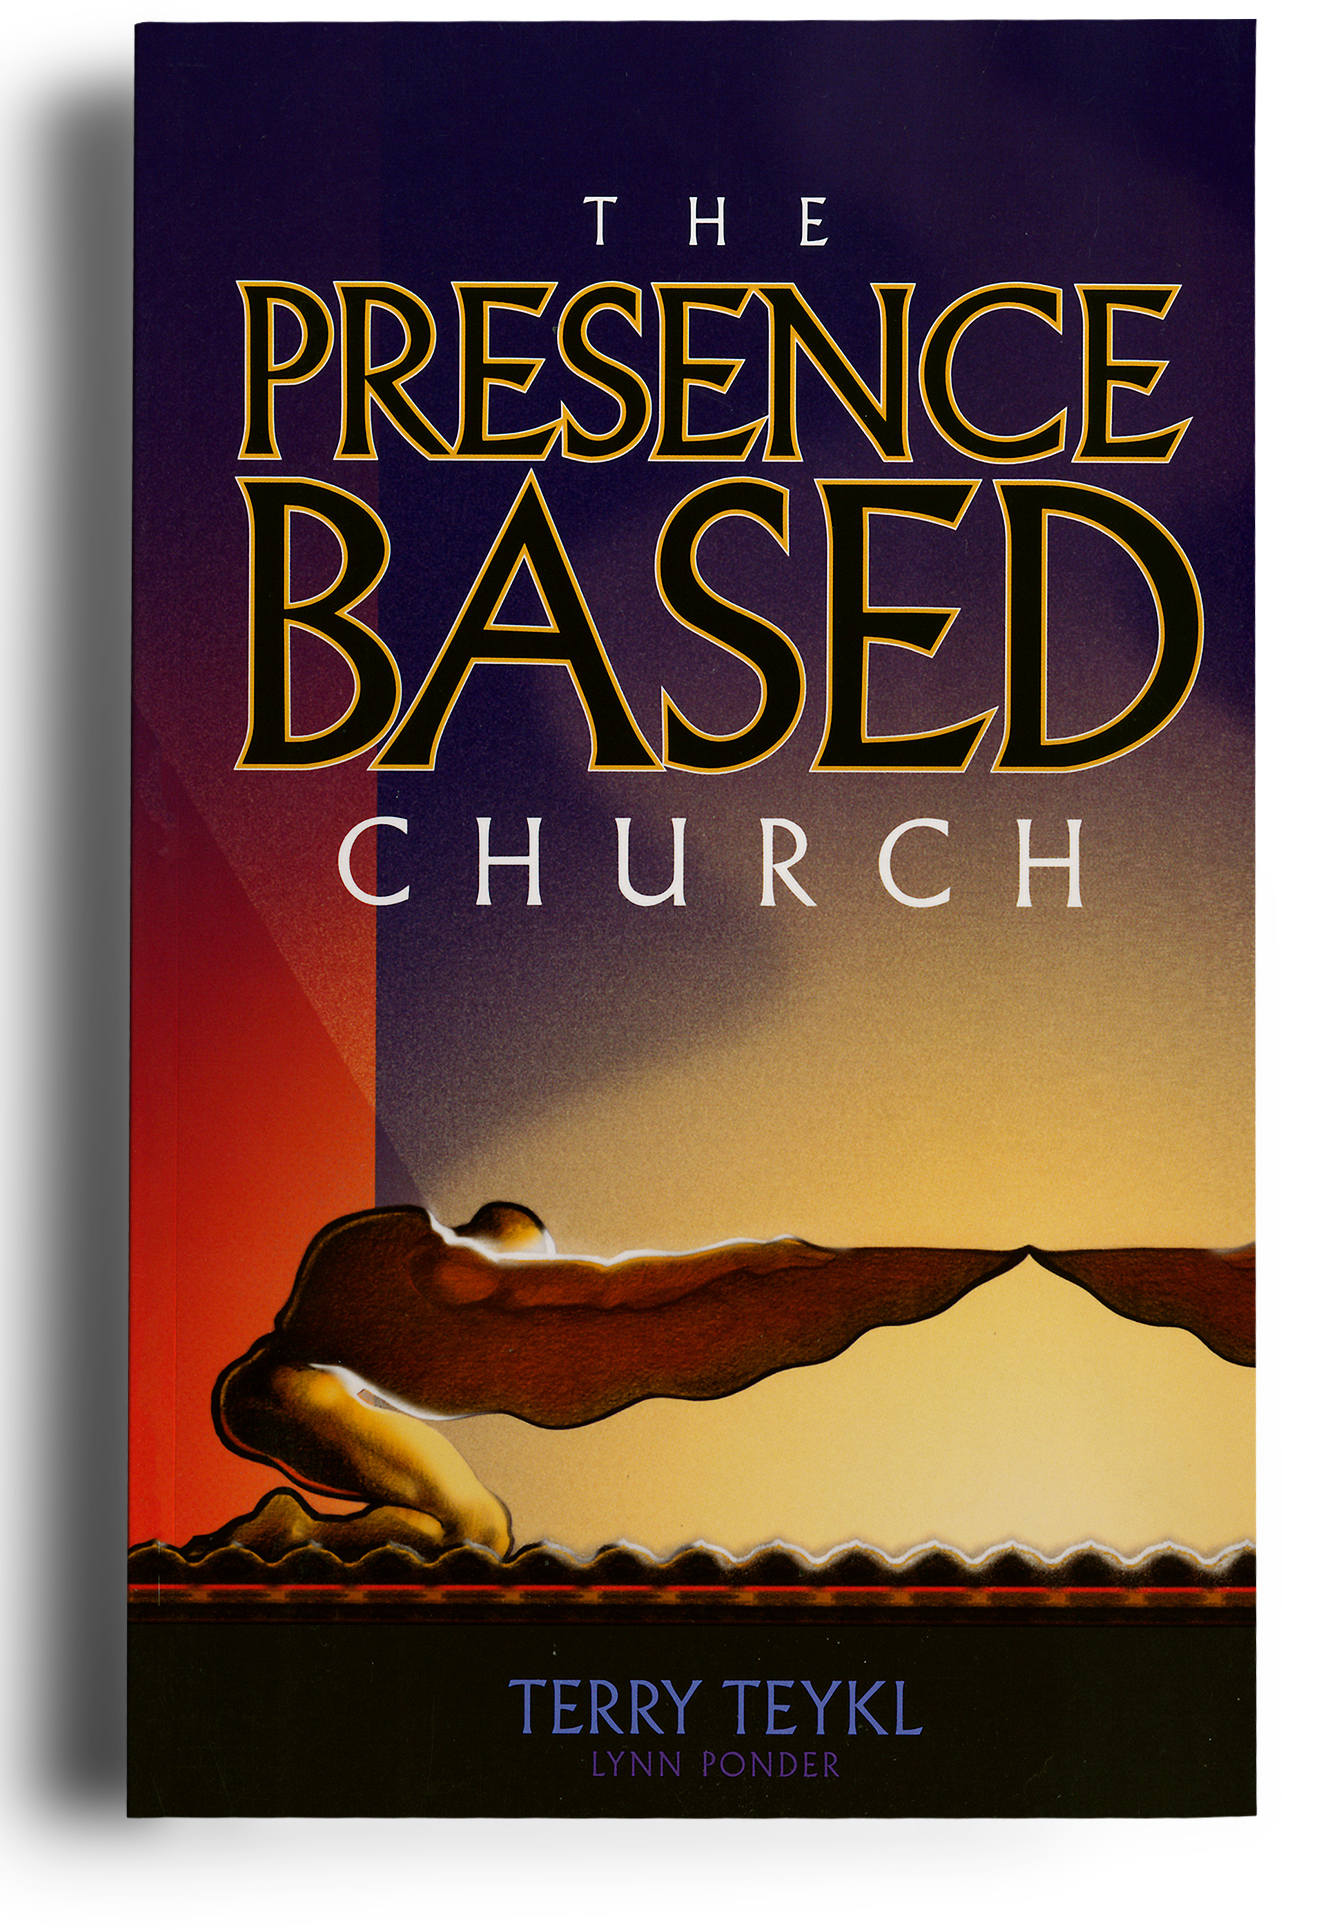 alt="The Presence Based Church book"